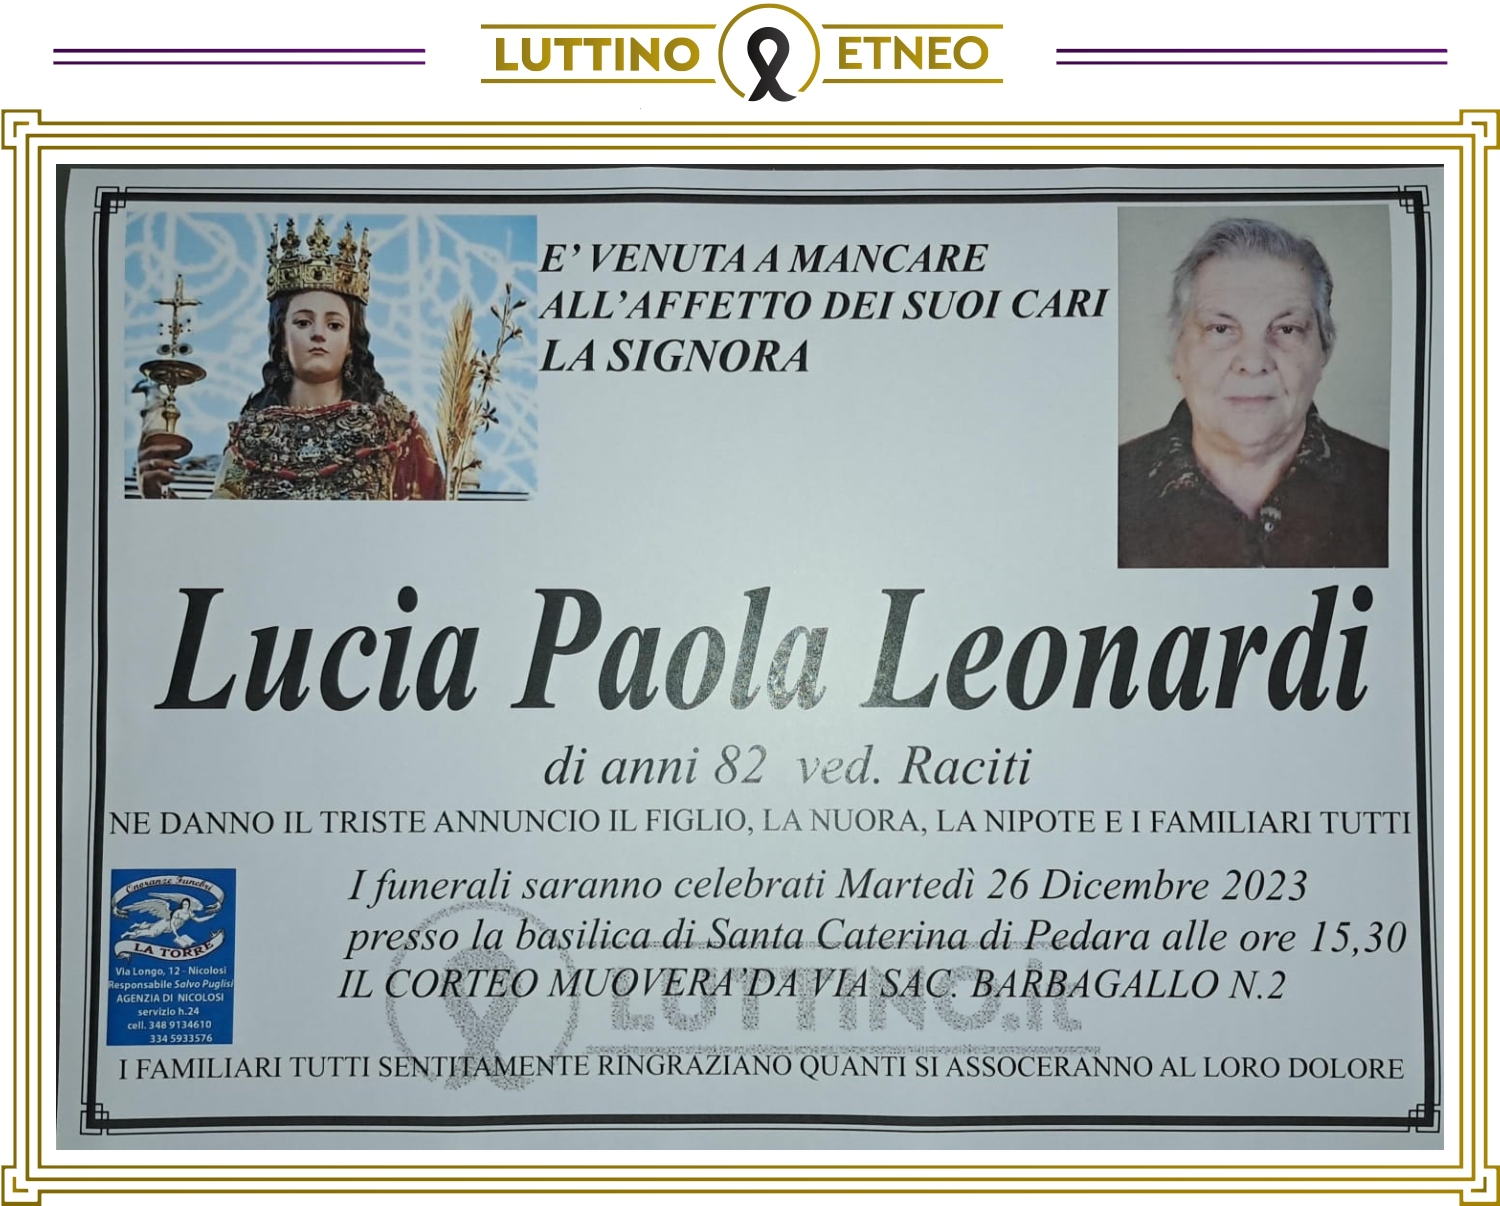 Lucia Paola Leonardi